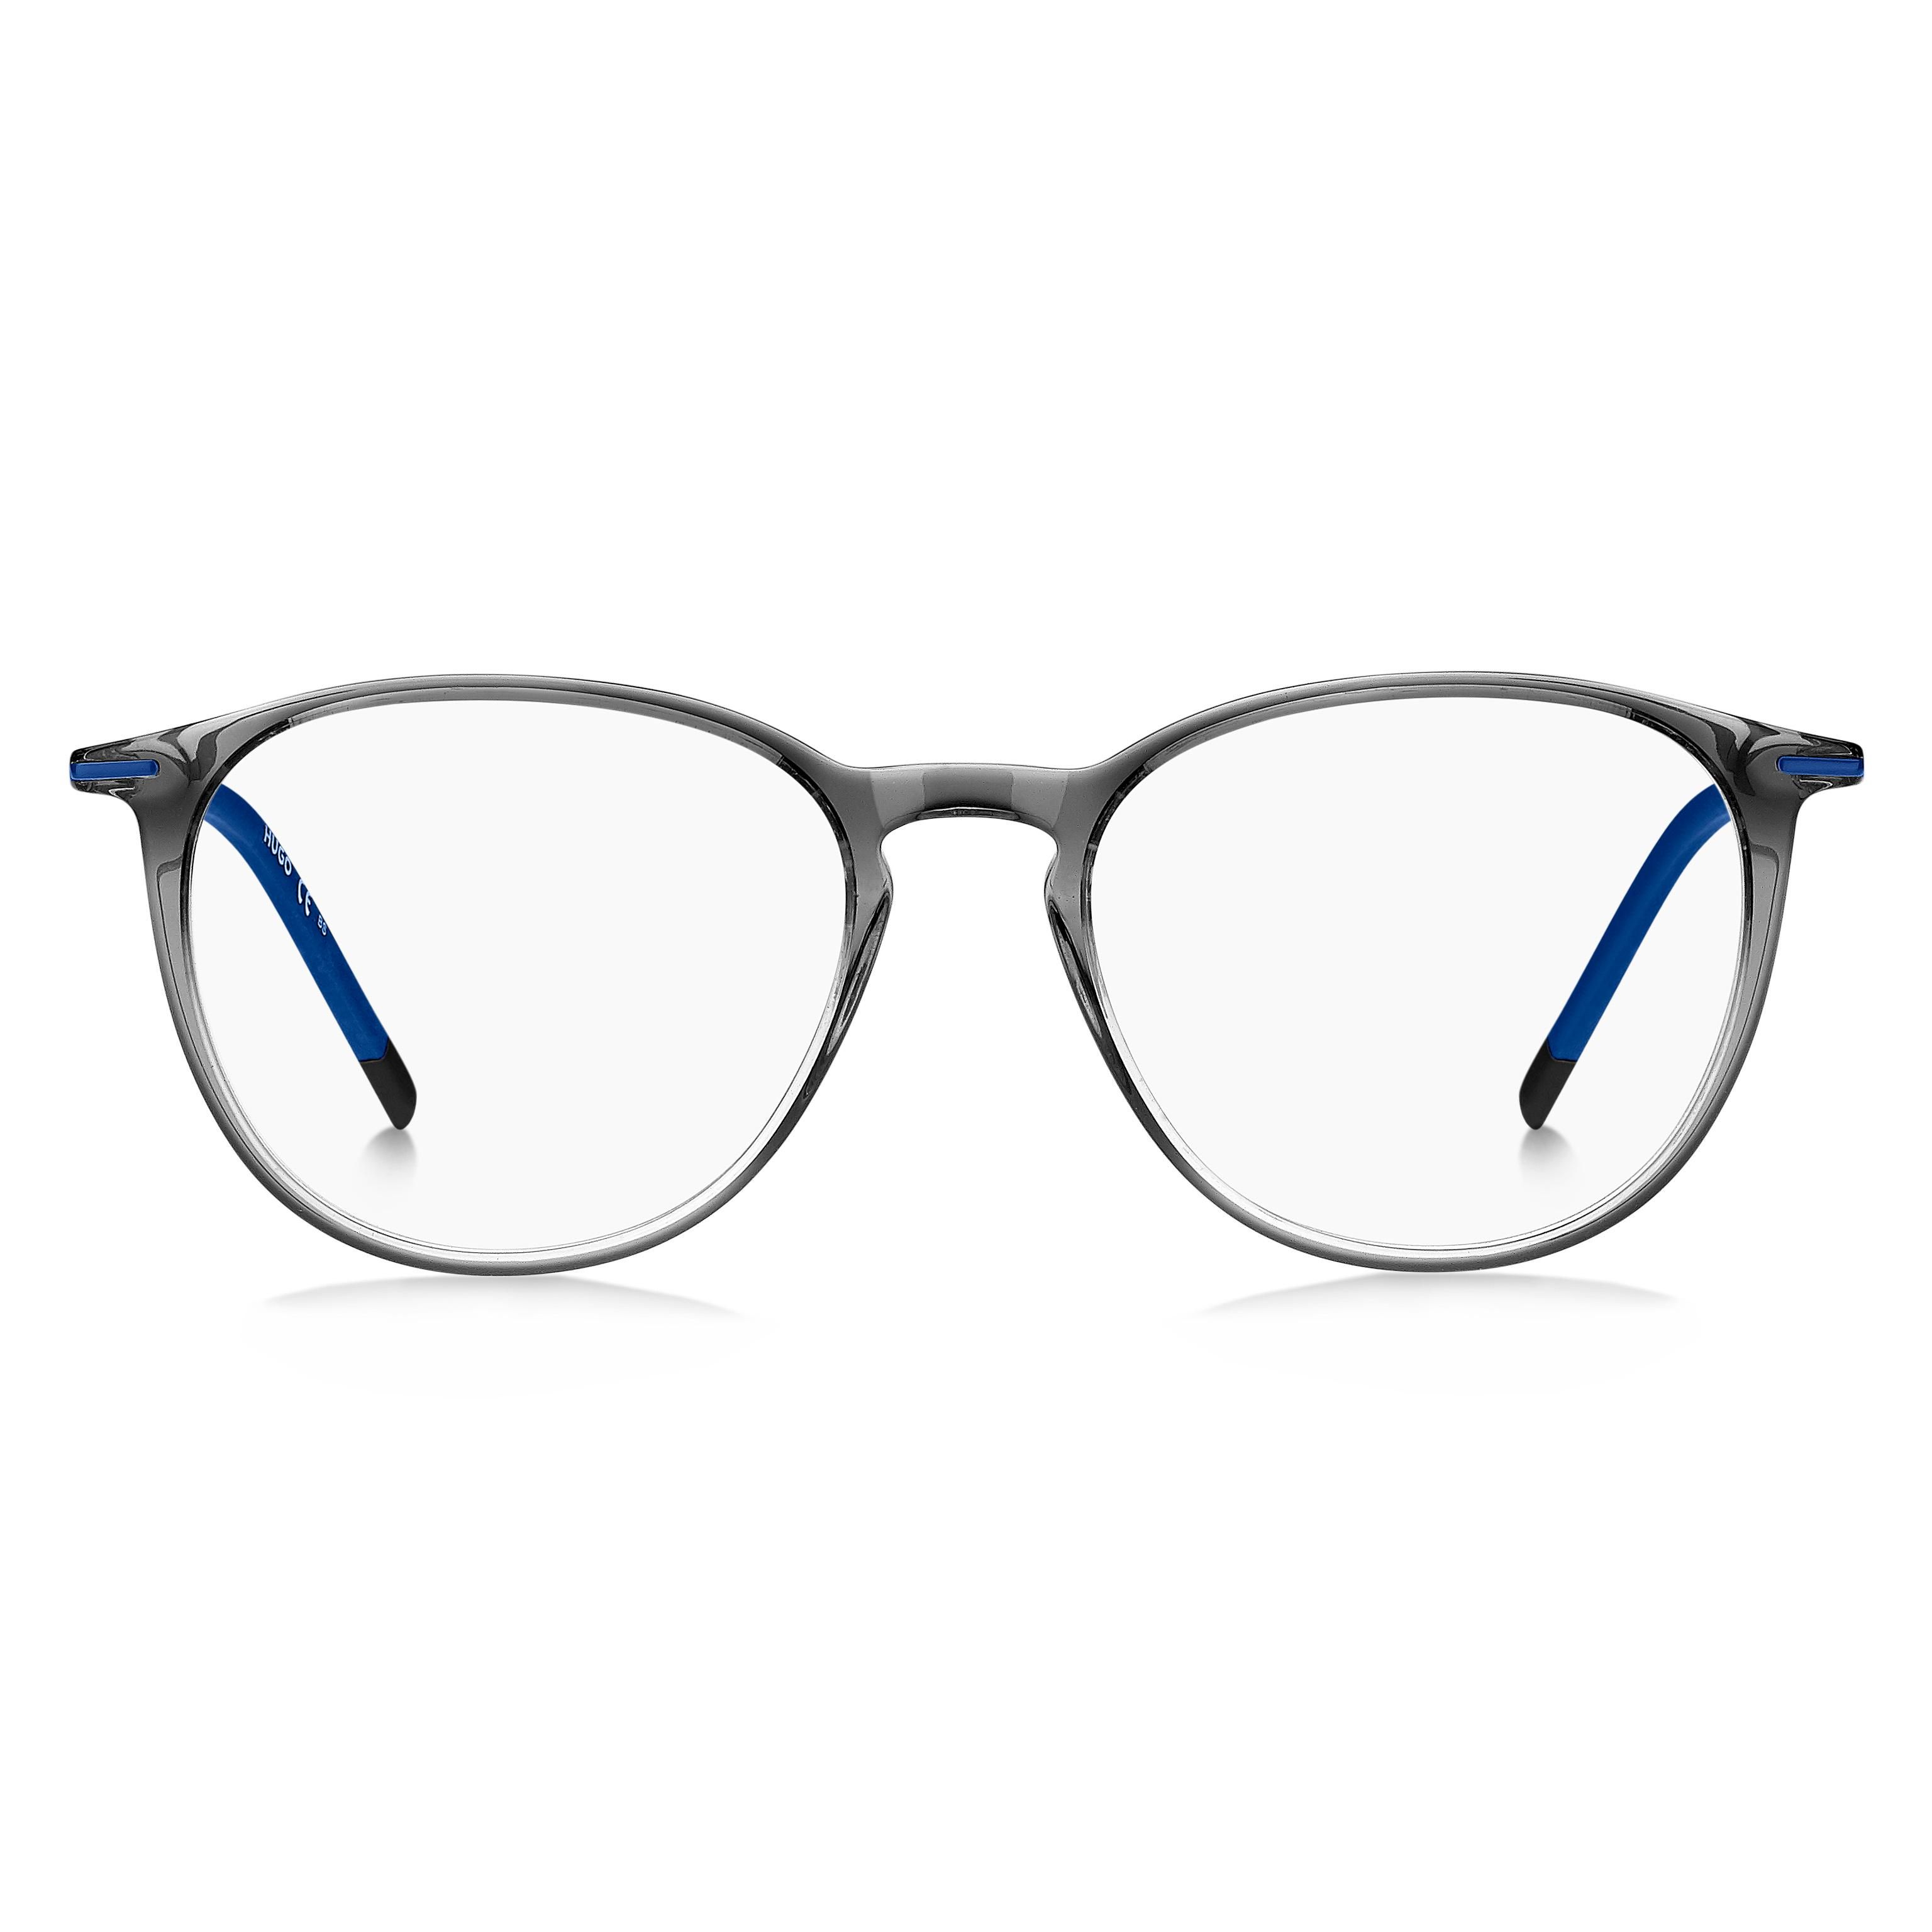 HG 1233 Round Eyeglasses HWJ - size 48